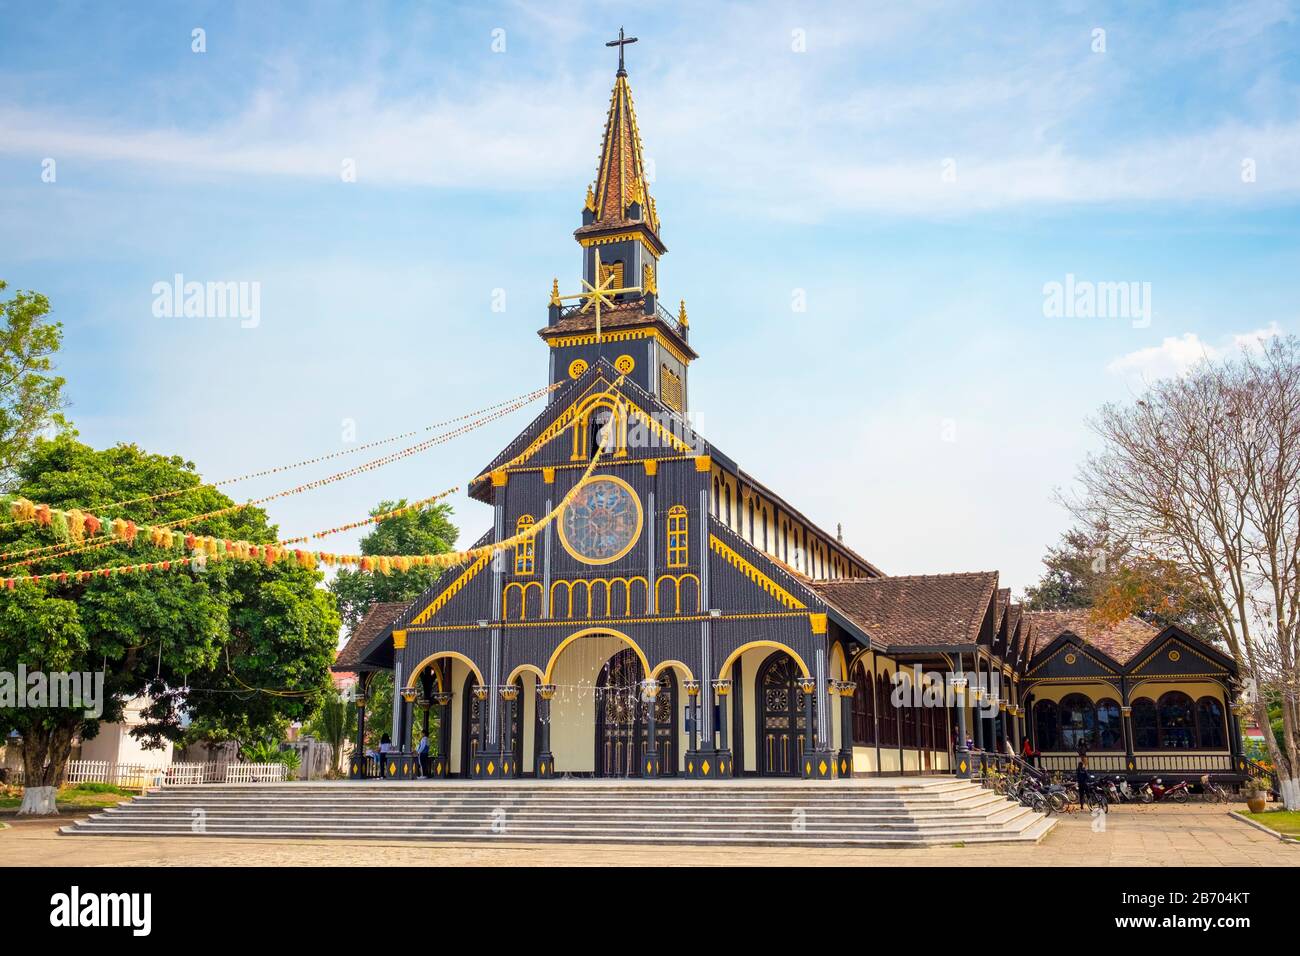 Cathédrale De Kon Tum, Également Connue Sous Le Nom D'Église En Bois, Kon Tum, Province De Kon Tum, Vietnam Banque D'Images